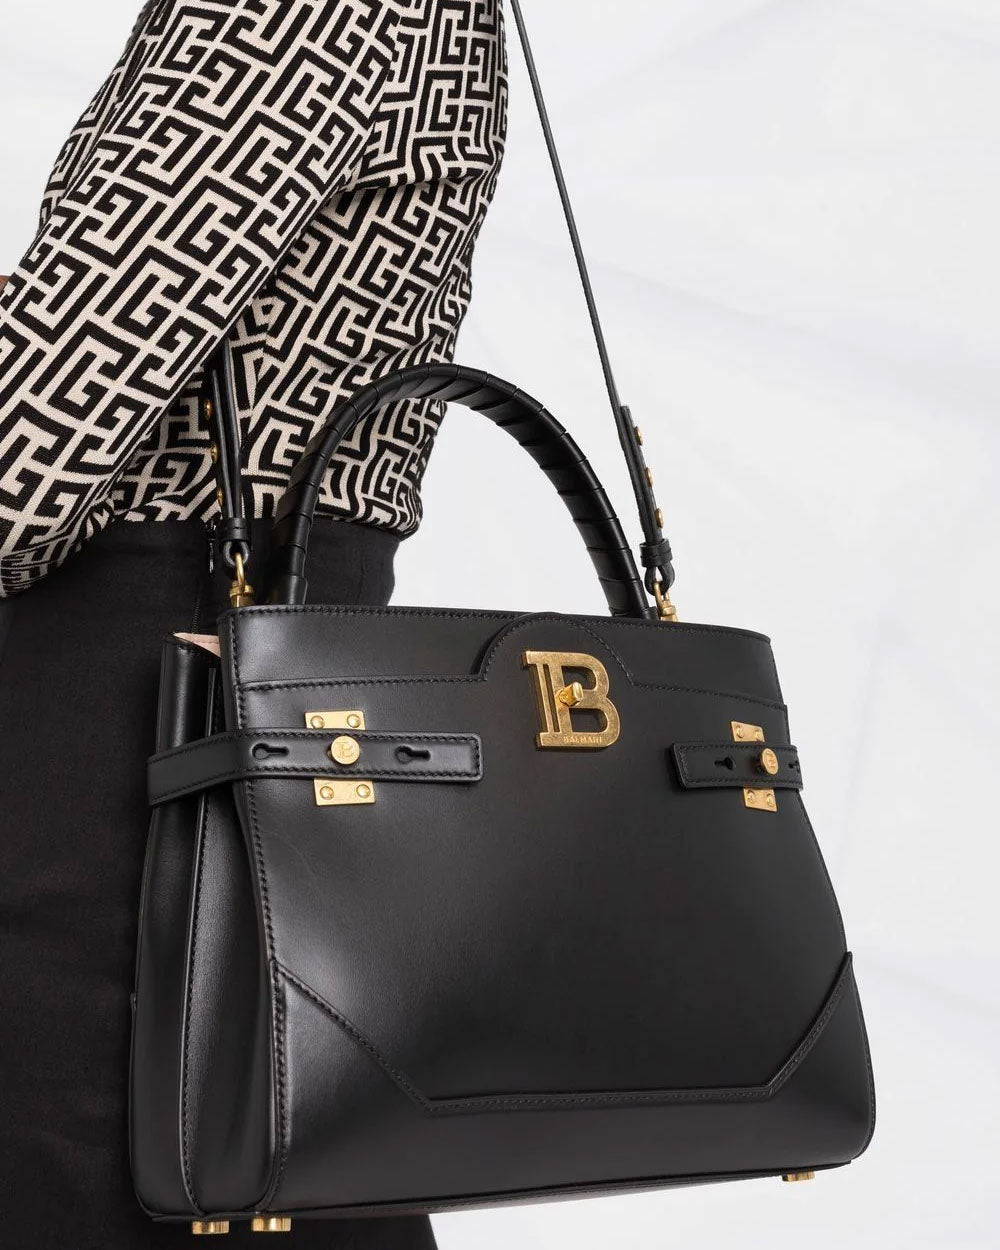 BBuzz Top Handle Bag in Black